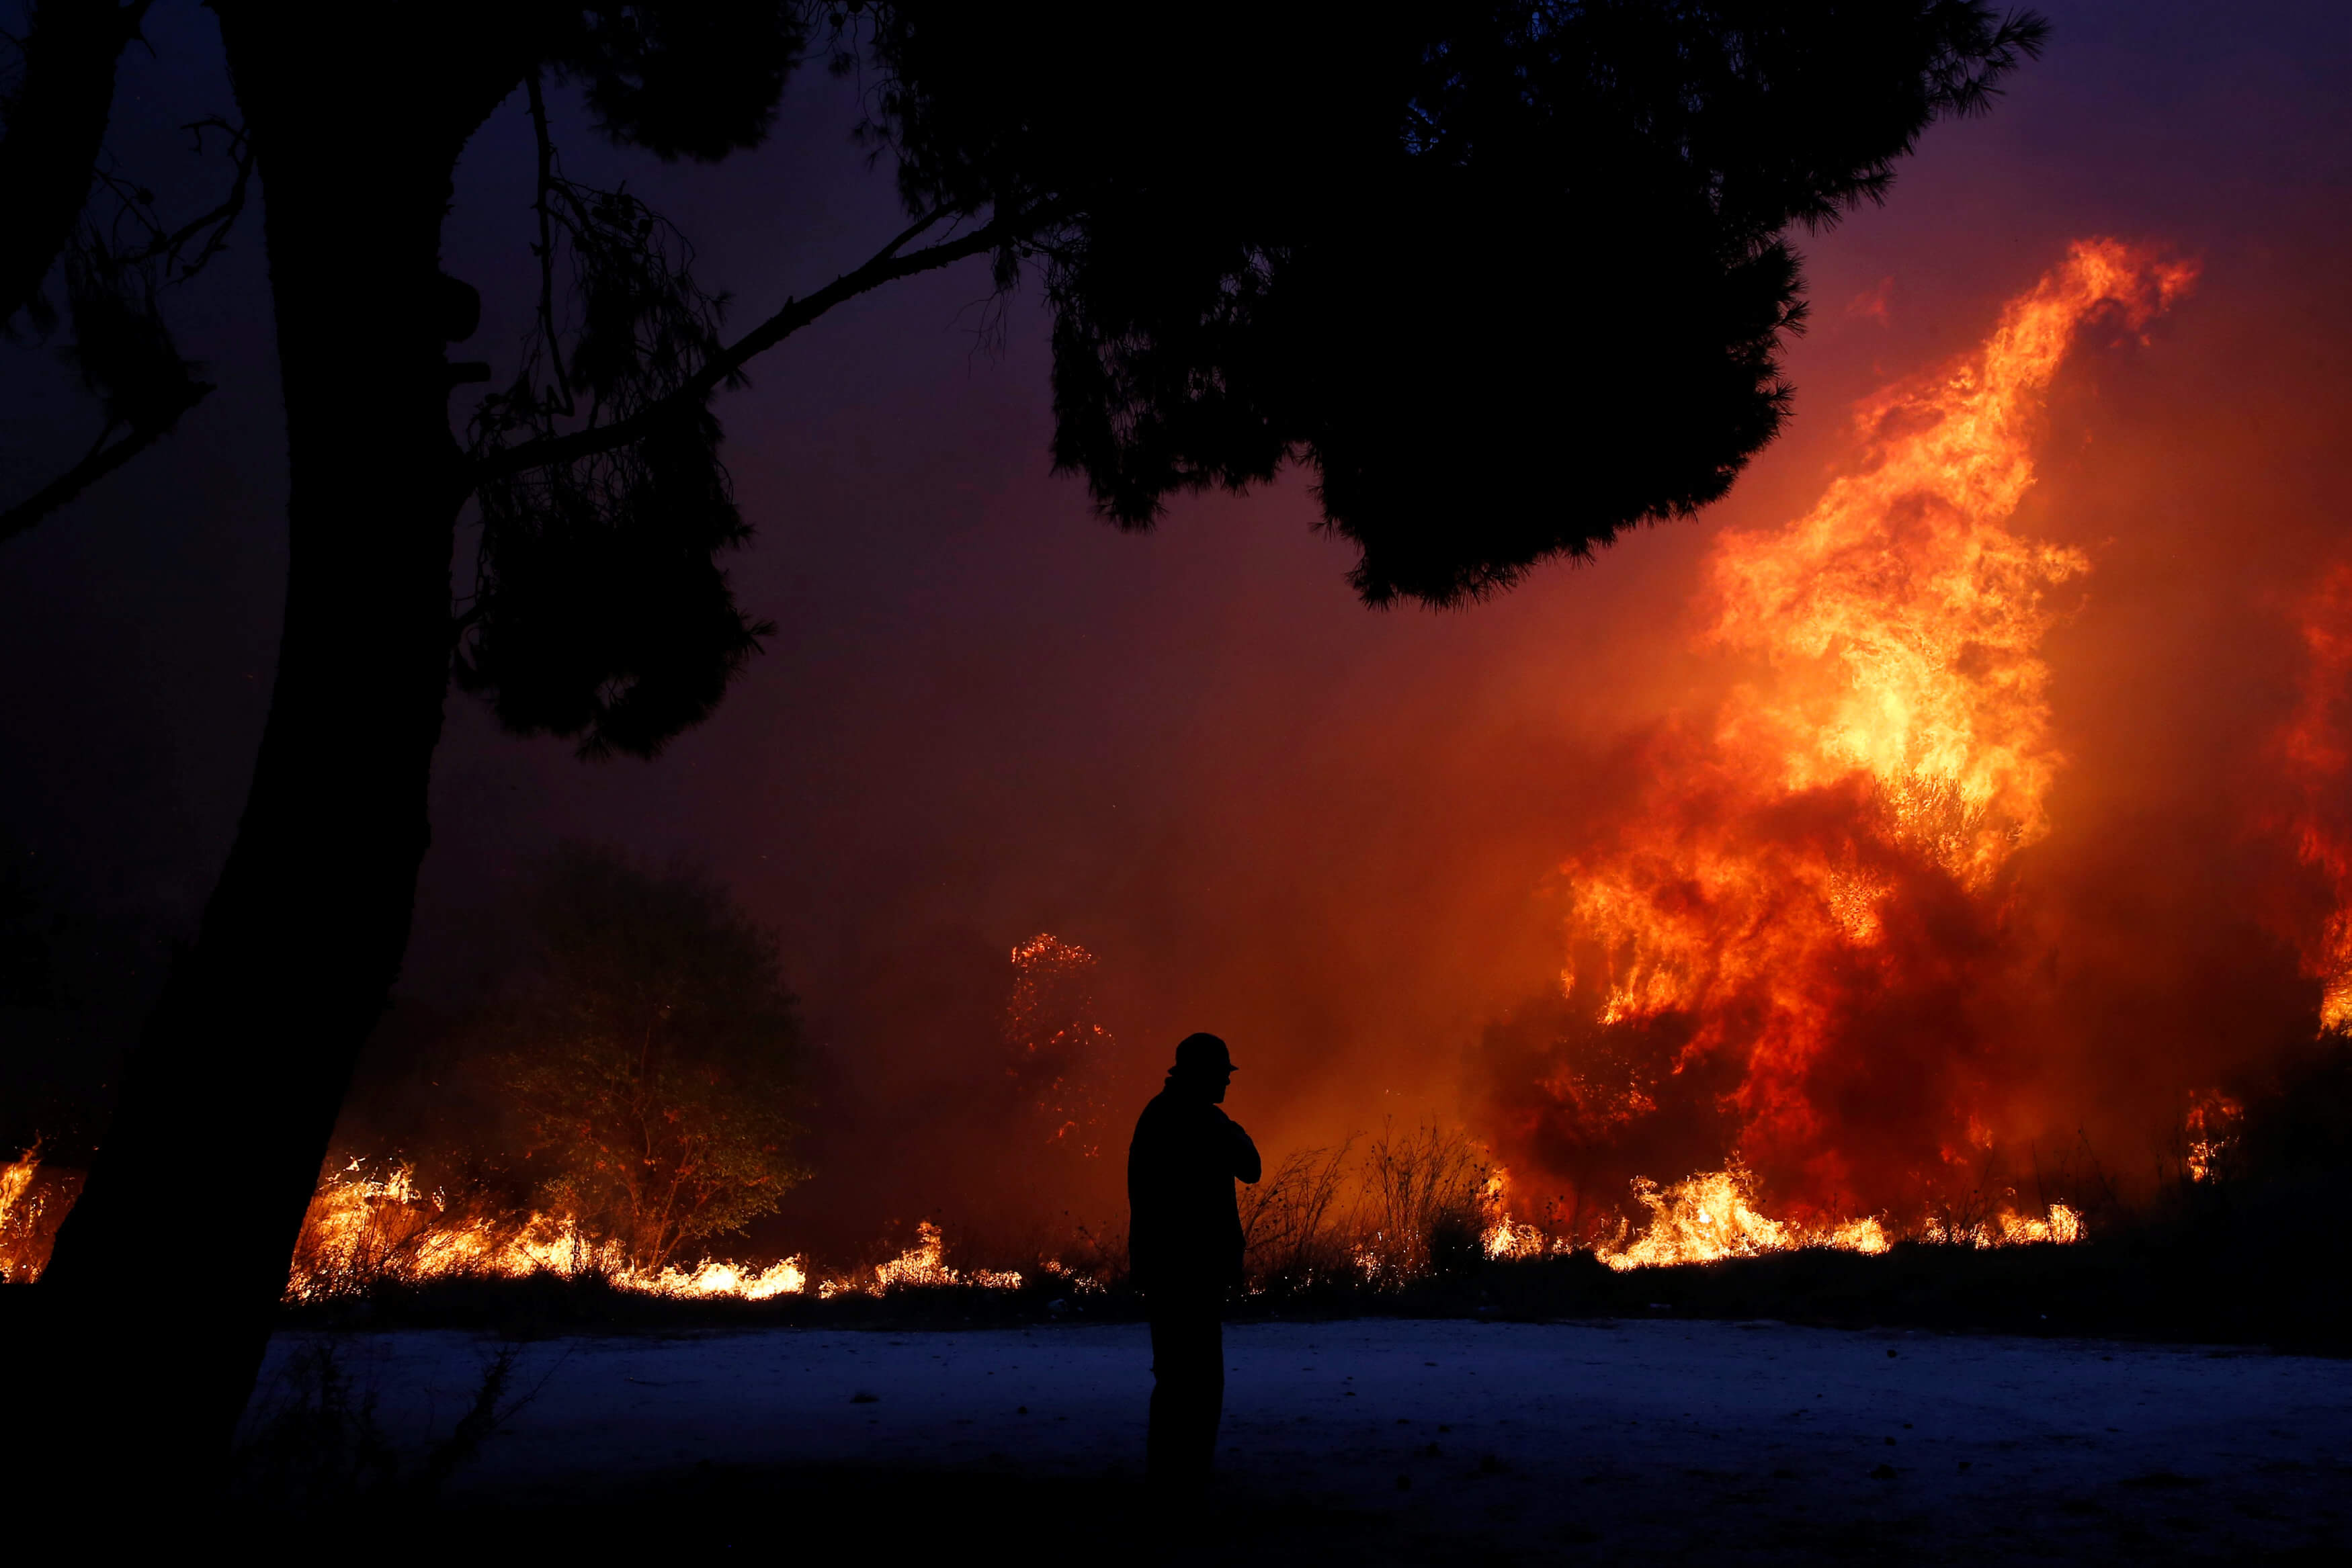 Gobierno Grecia confirma 20 muertos incendios forestales